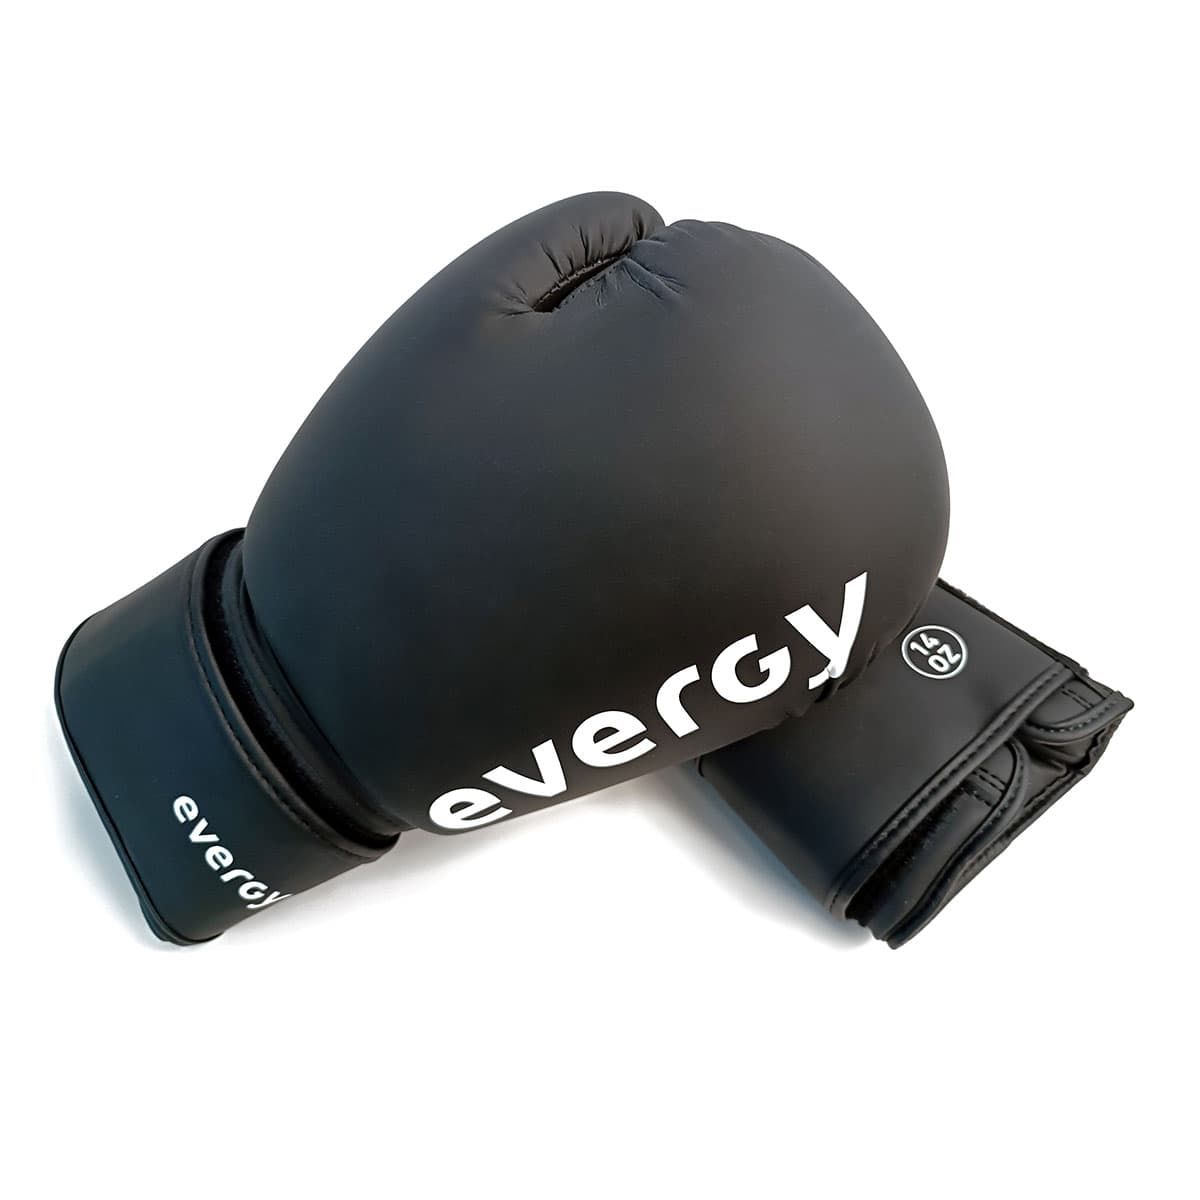 Elite Evergy Boxing Gloves